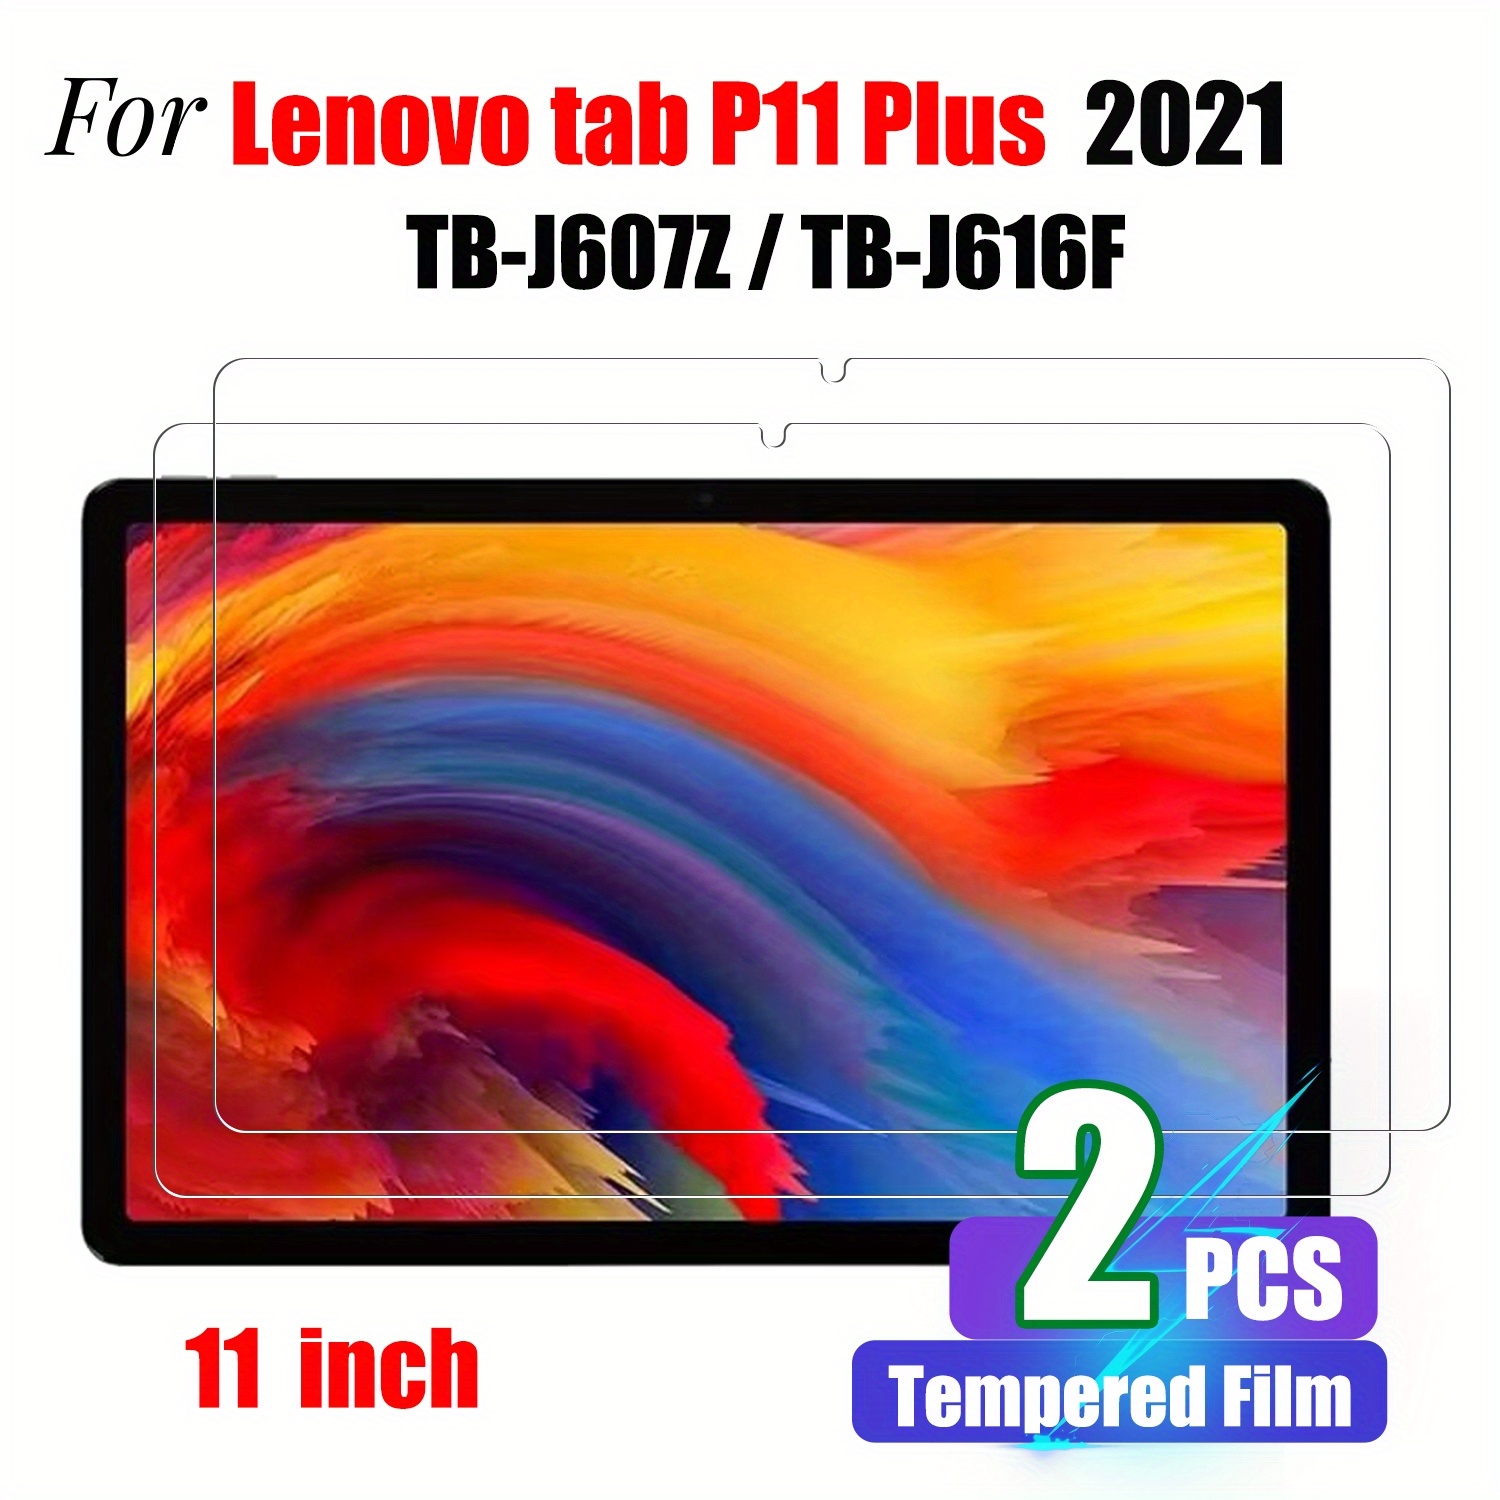 11 Original For Lenovo Tab P11 TB-J606F TB-J606N TB-J606L LCD